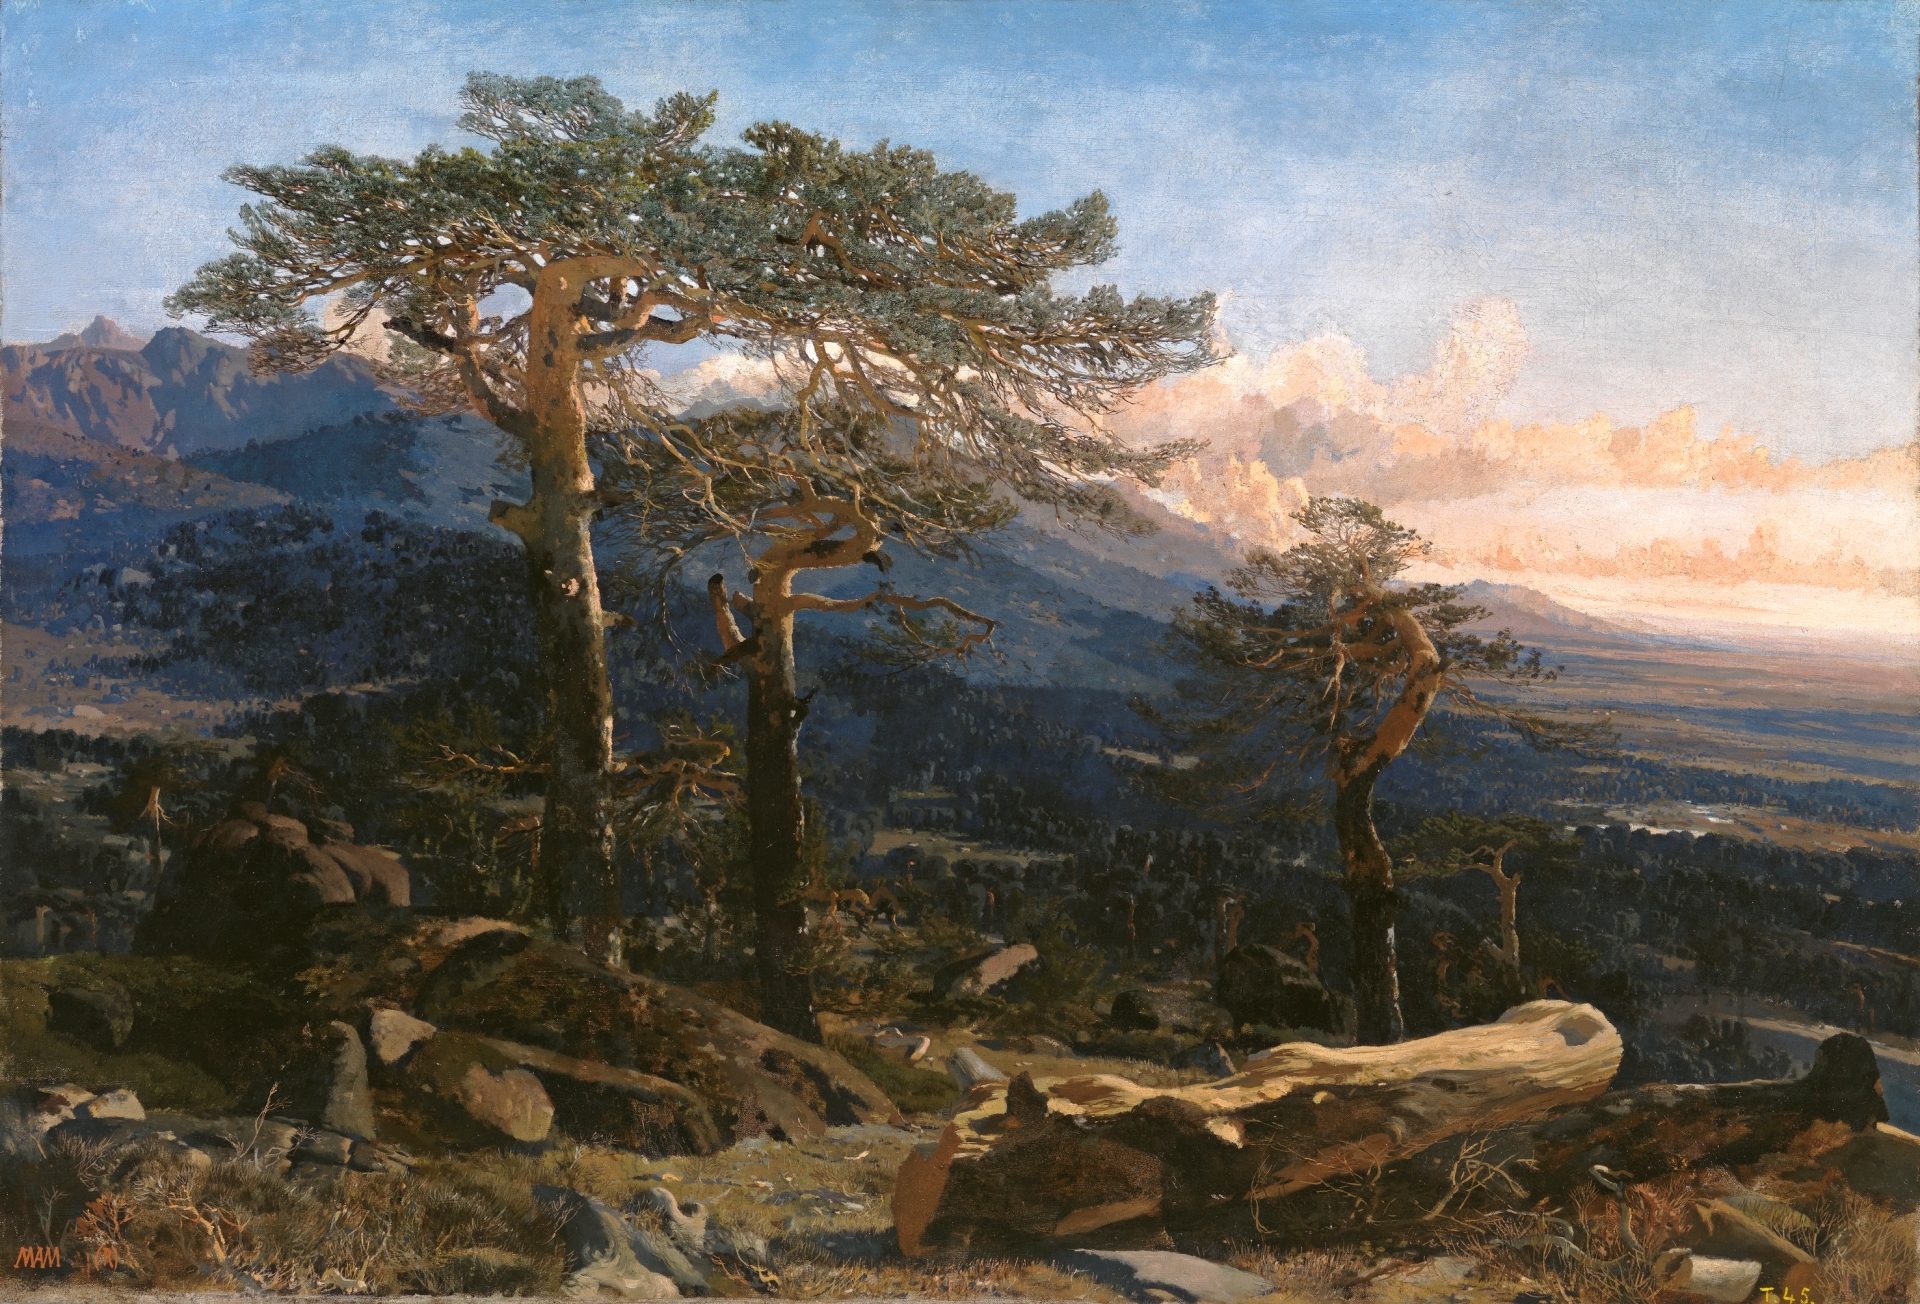 The Landscape Painter Martín Rico 1833, Spanish Landscape Painters